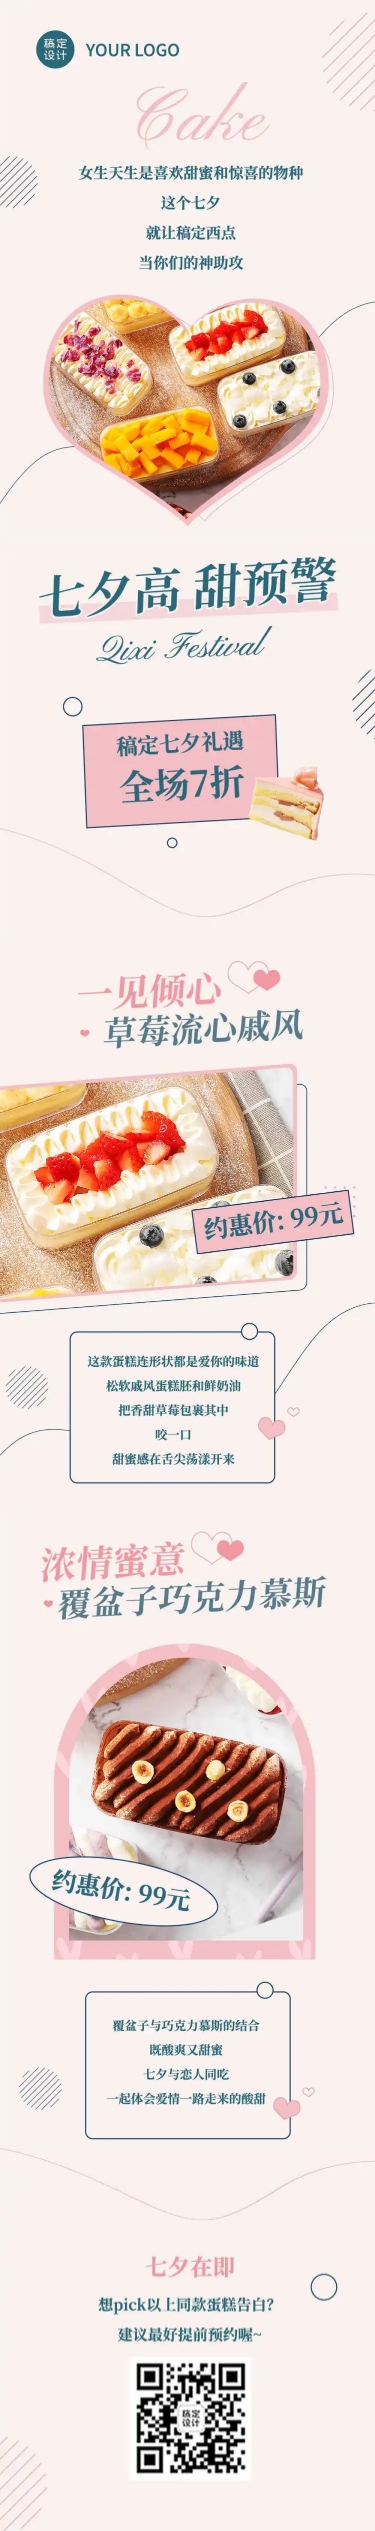 七夕烘焙甜品新品上市实景文章长图预览效果